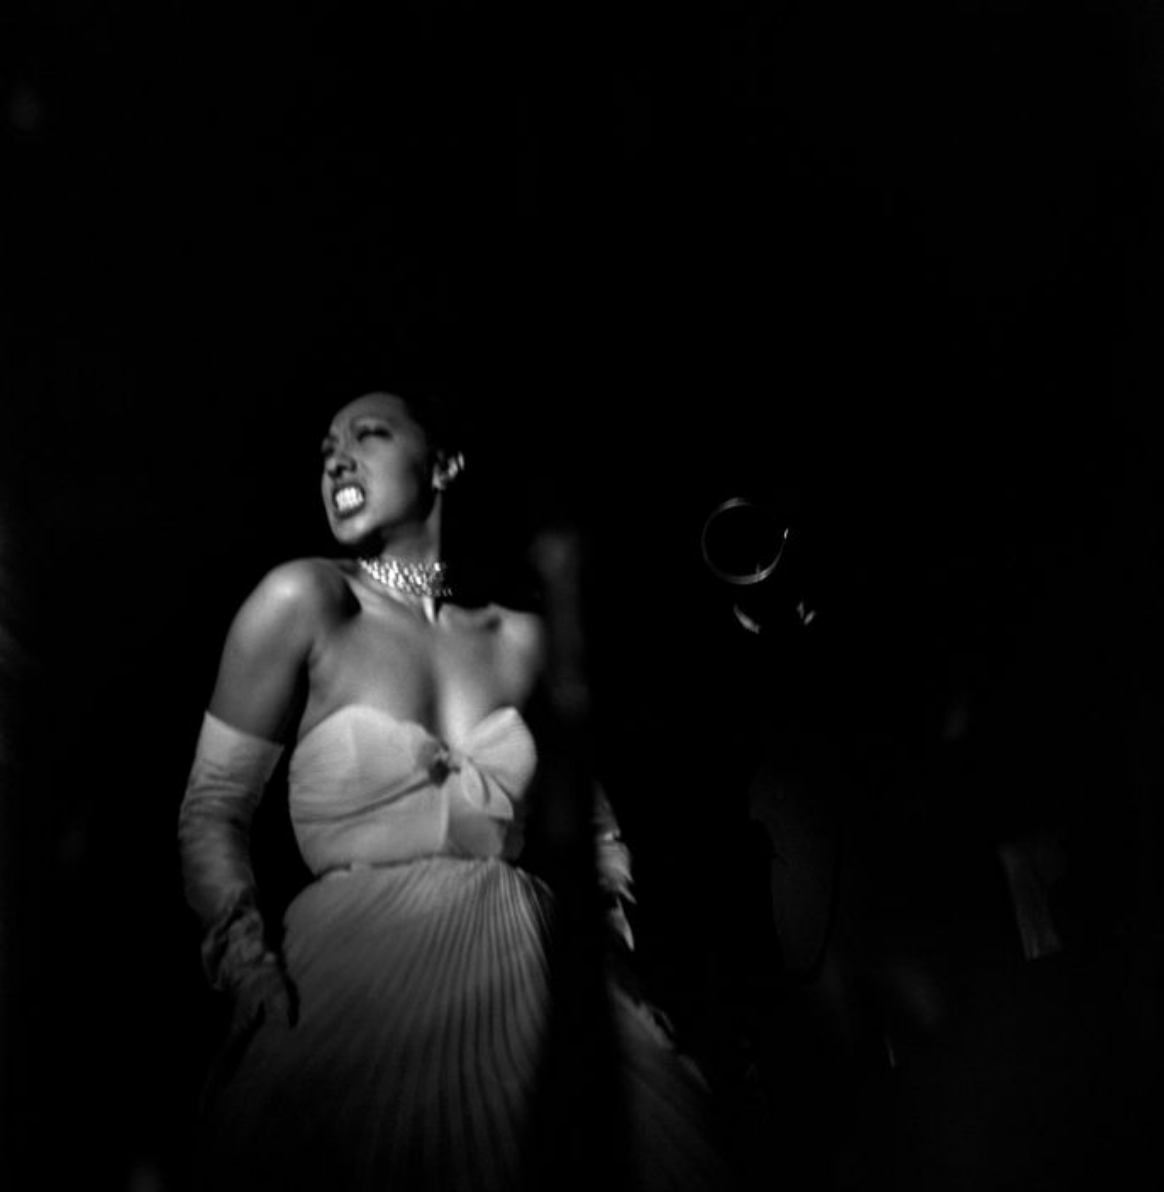 Josephine Baker in Harlem, 1950.